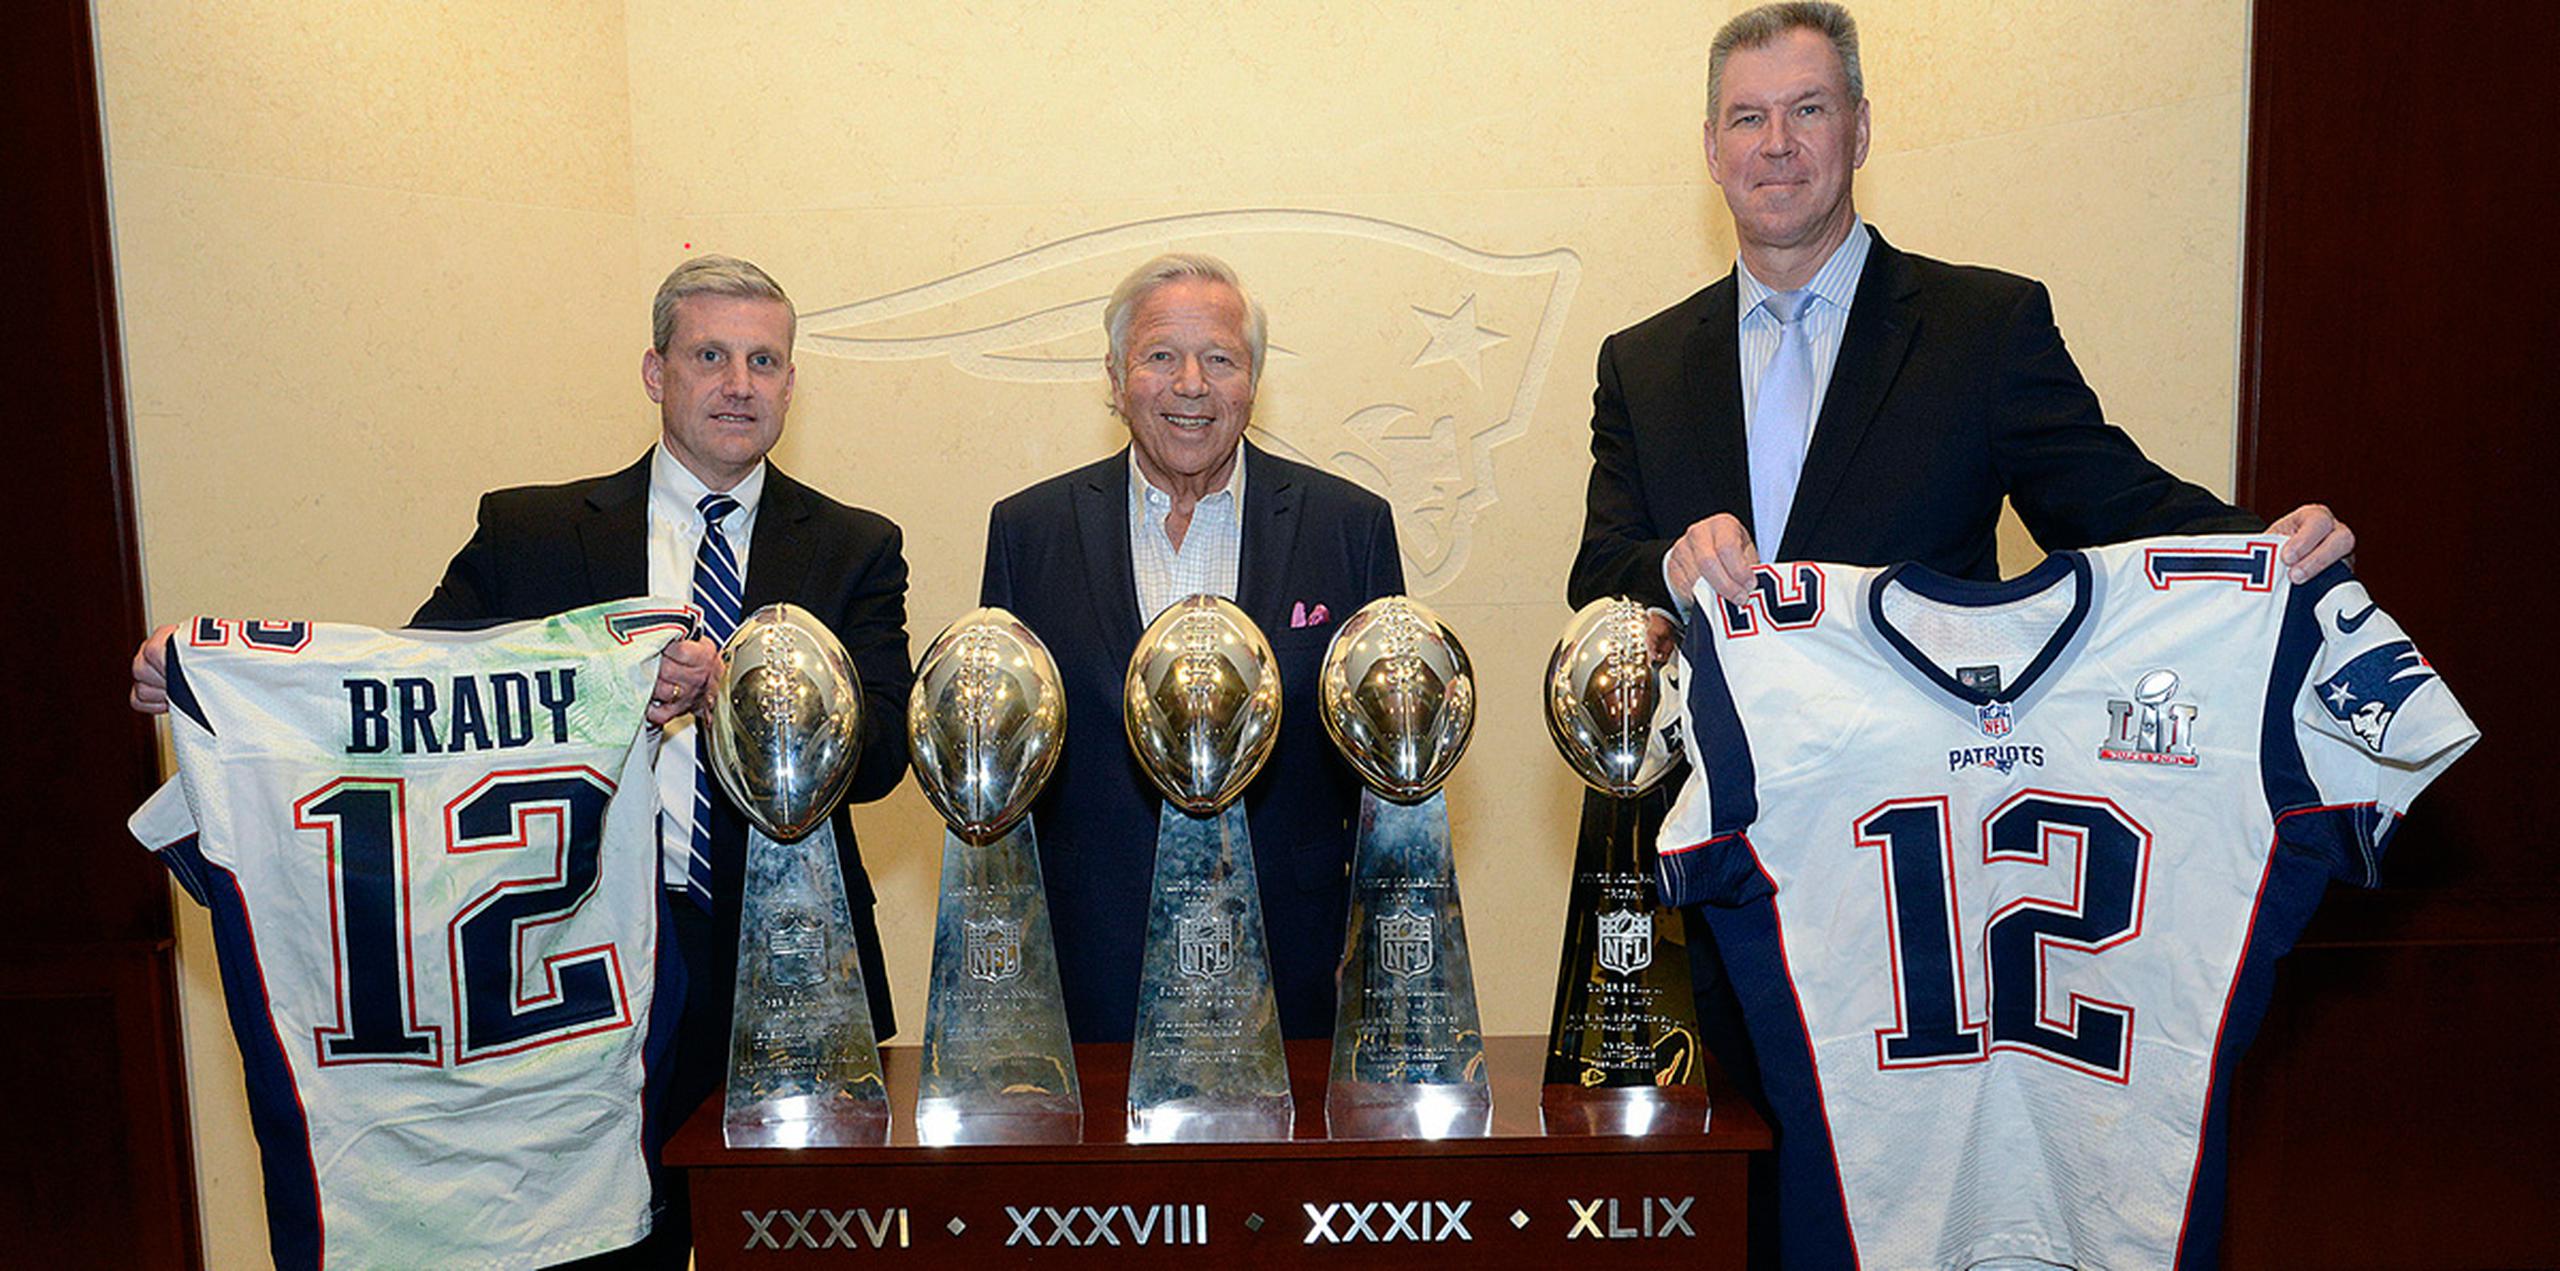 El FBI anunció el jueves que las camisetas con las que Brady disputó el Super Bowl de este año y el de 2015 fueron llevadas en la jornada al Gillette Stadium. (AP)